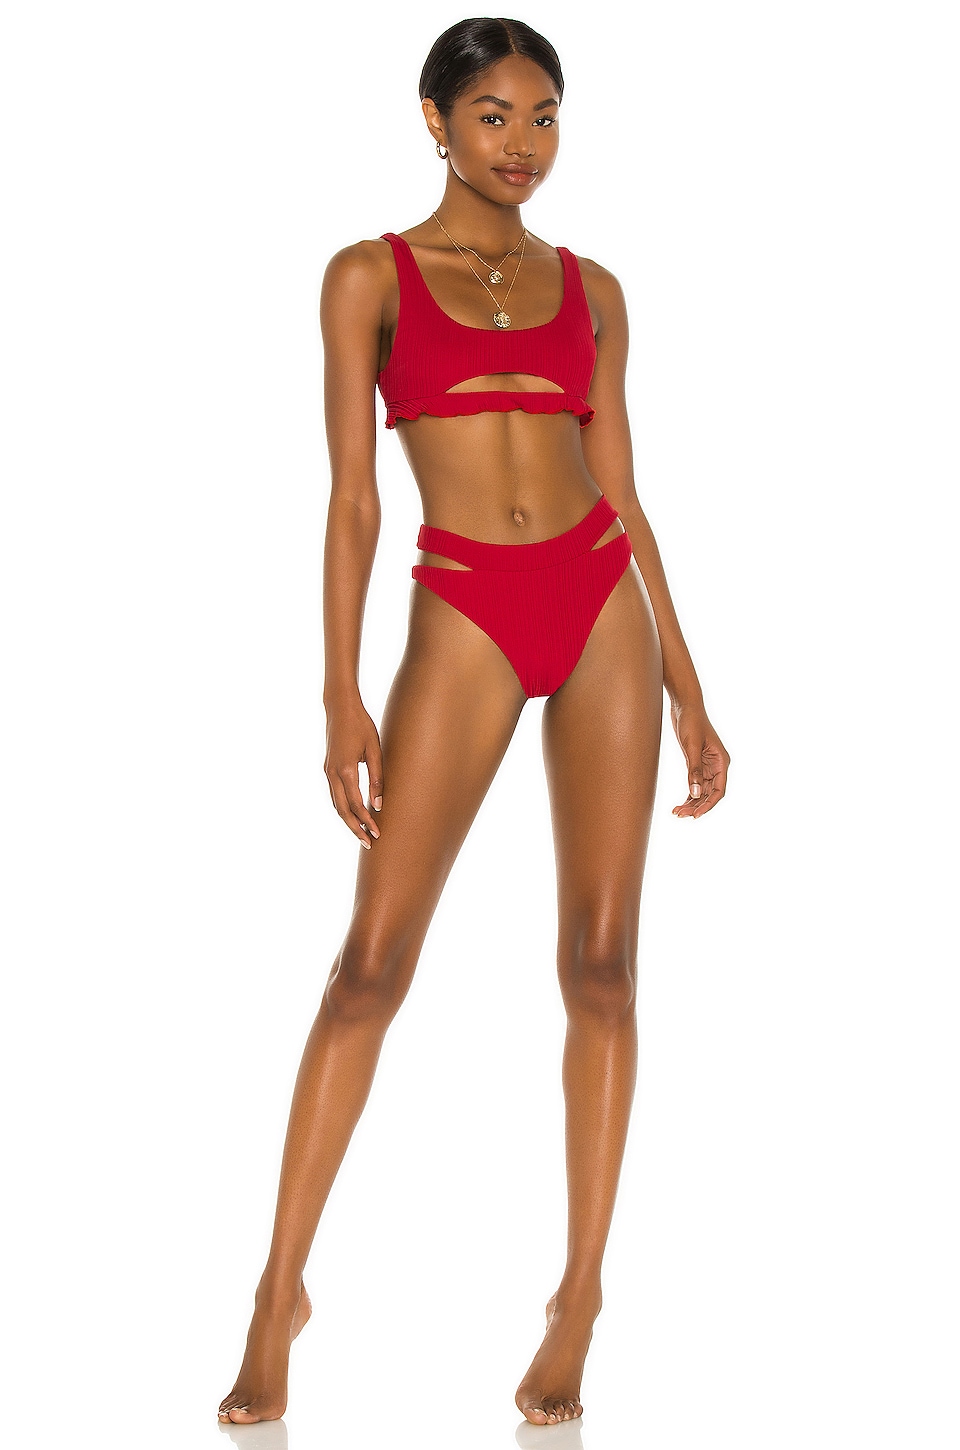 Aro Swim X Madelyn Cline Lee Bikini Bottom In Scarlet Revolve 